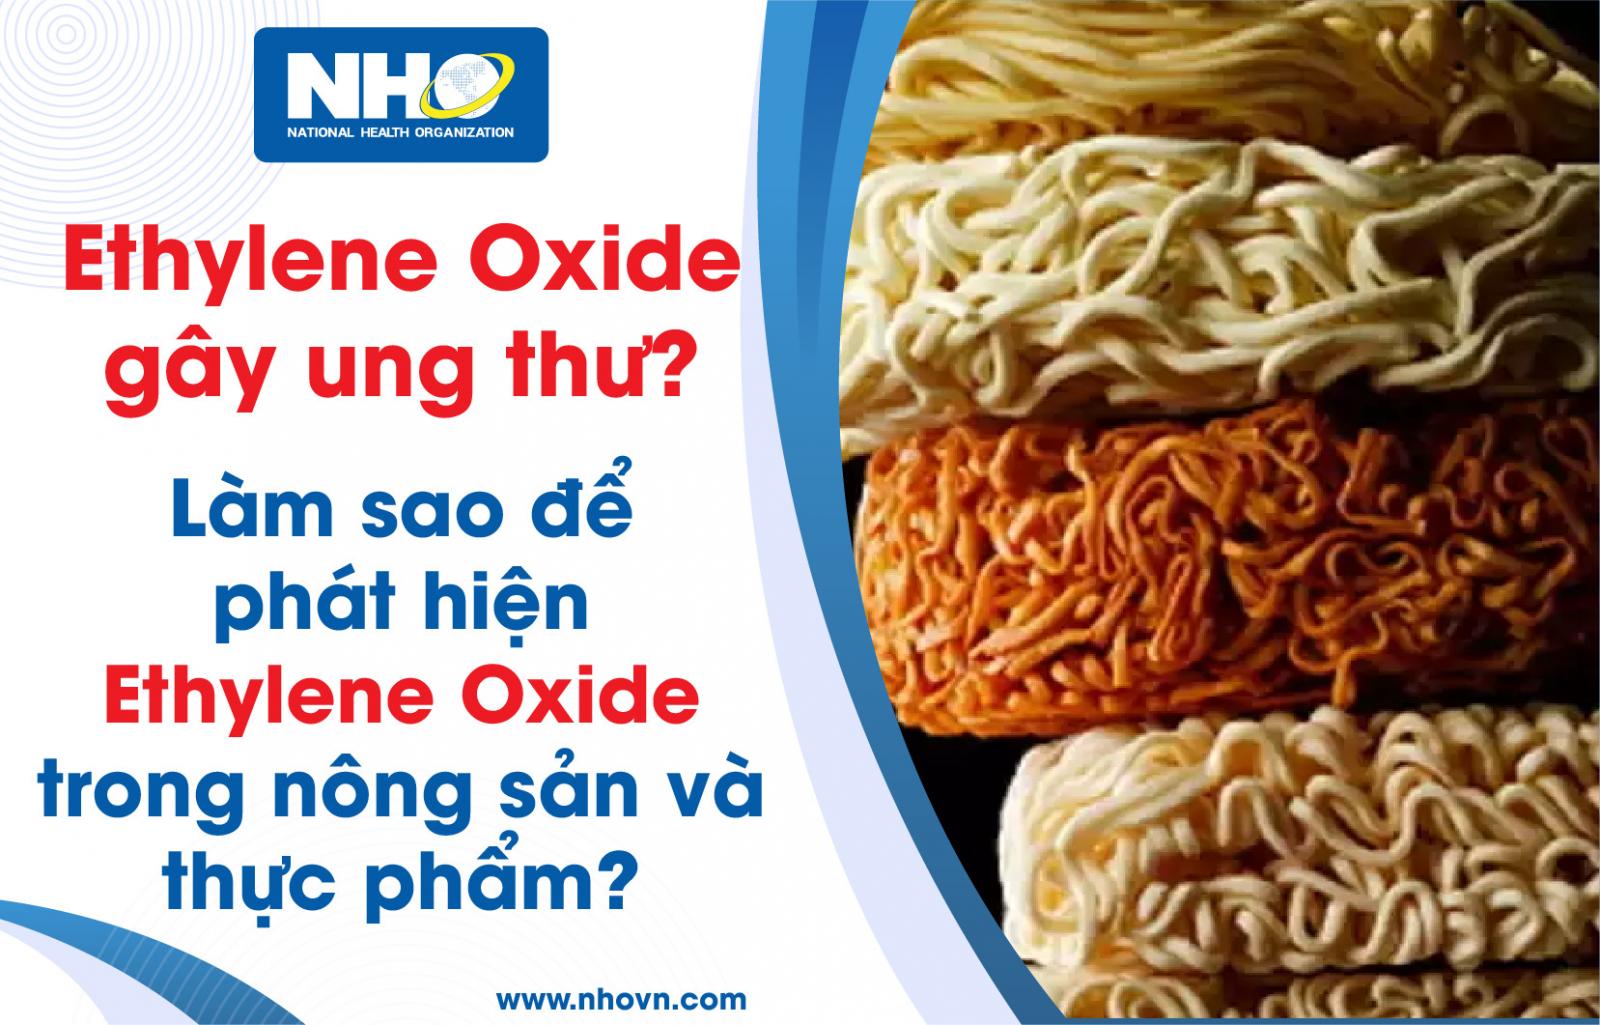 Quy định và giới hạn dư lượng Ethylene Oxide trong thực phẩm tại Việt Nam và trên thế giới